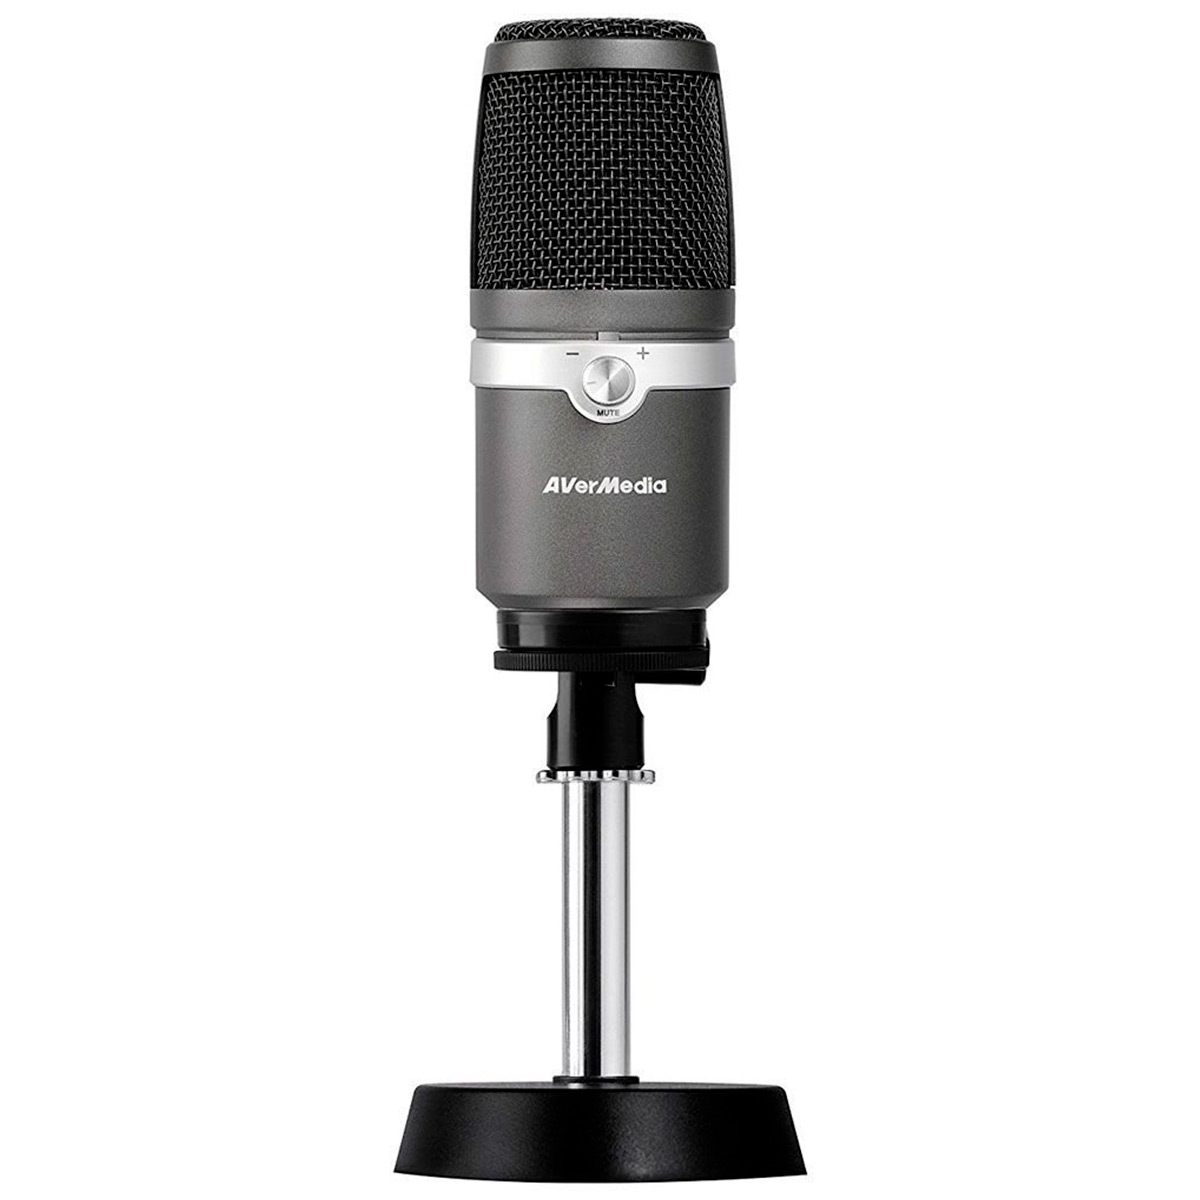 Microfone Condensador USB AverMedia AM310 - Ideal para Mesa de Gravação e vídeos Youtube